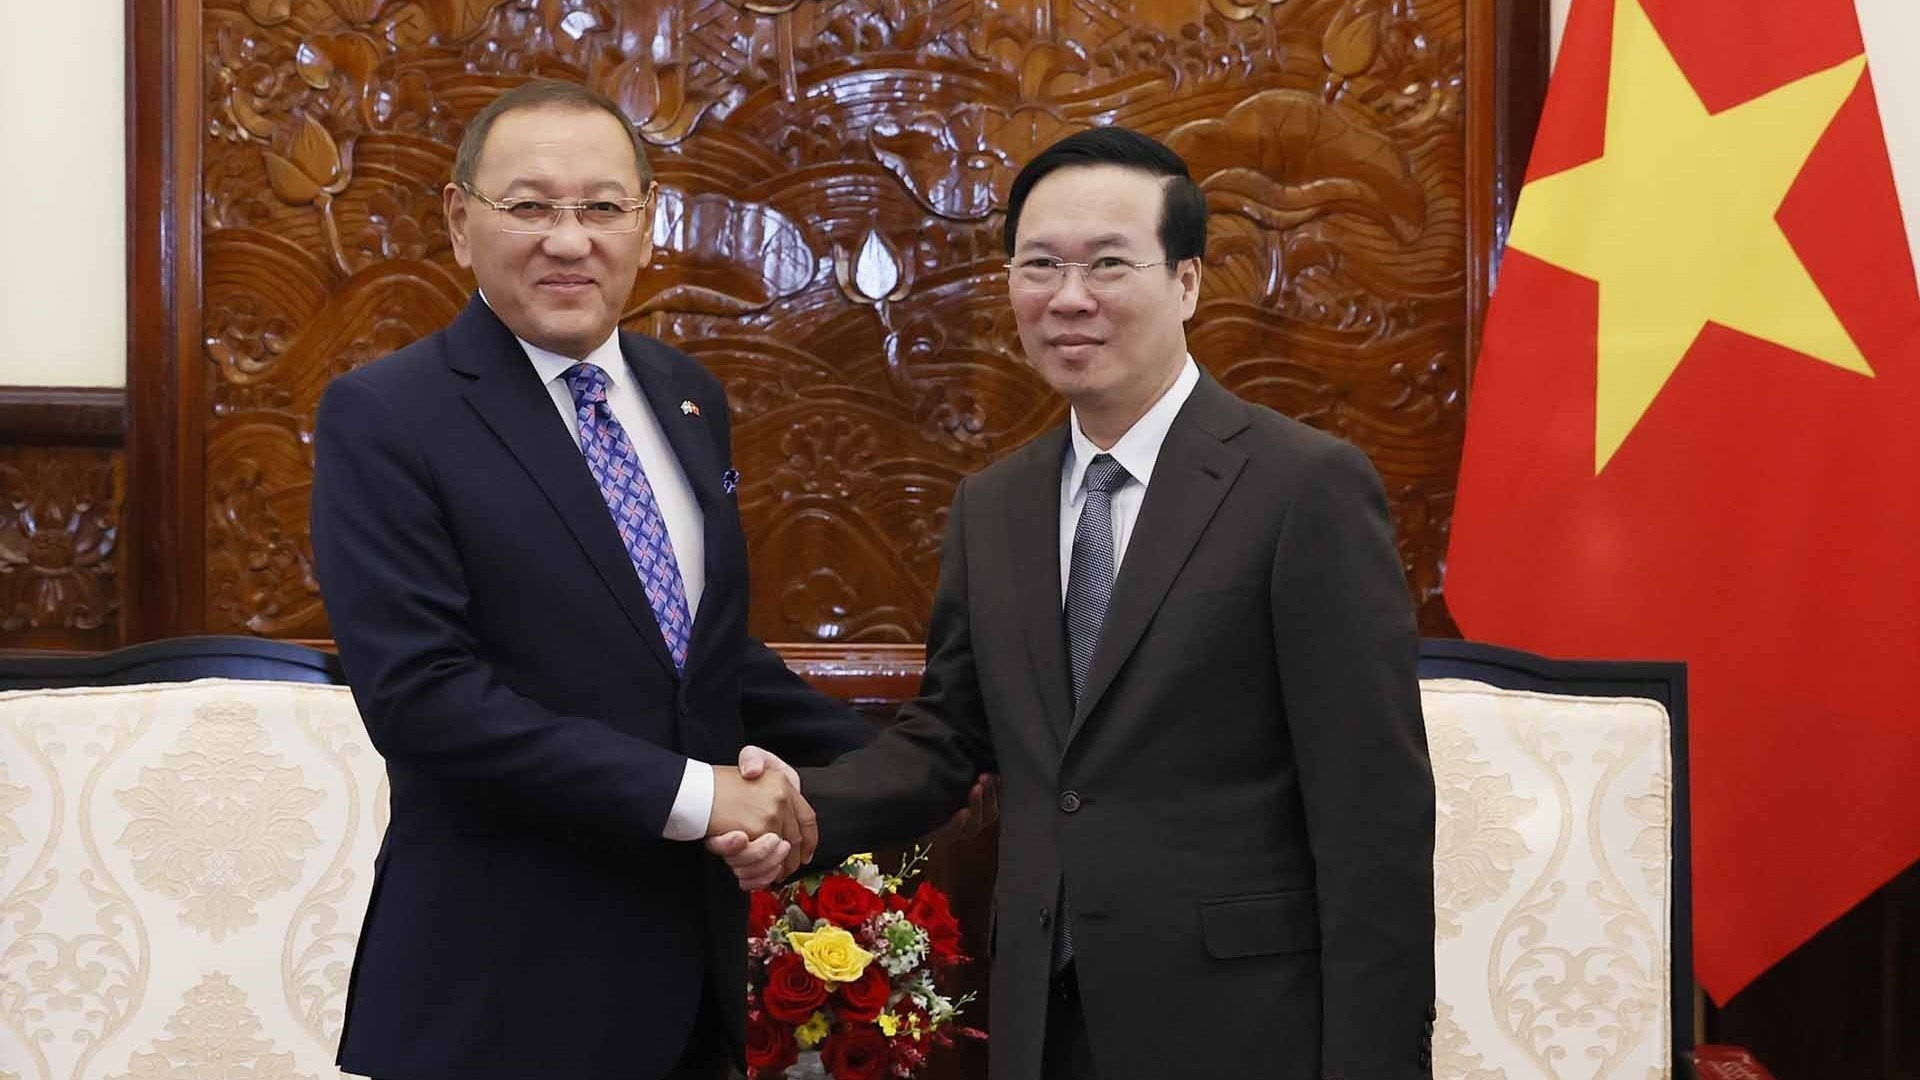 Chủ tịch nước Võ Văn Thưởng tiếp Đại sứ Kazakhstan chào từ biệt, kết thúc nhiệm kỳ tại Việt Nam